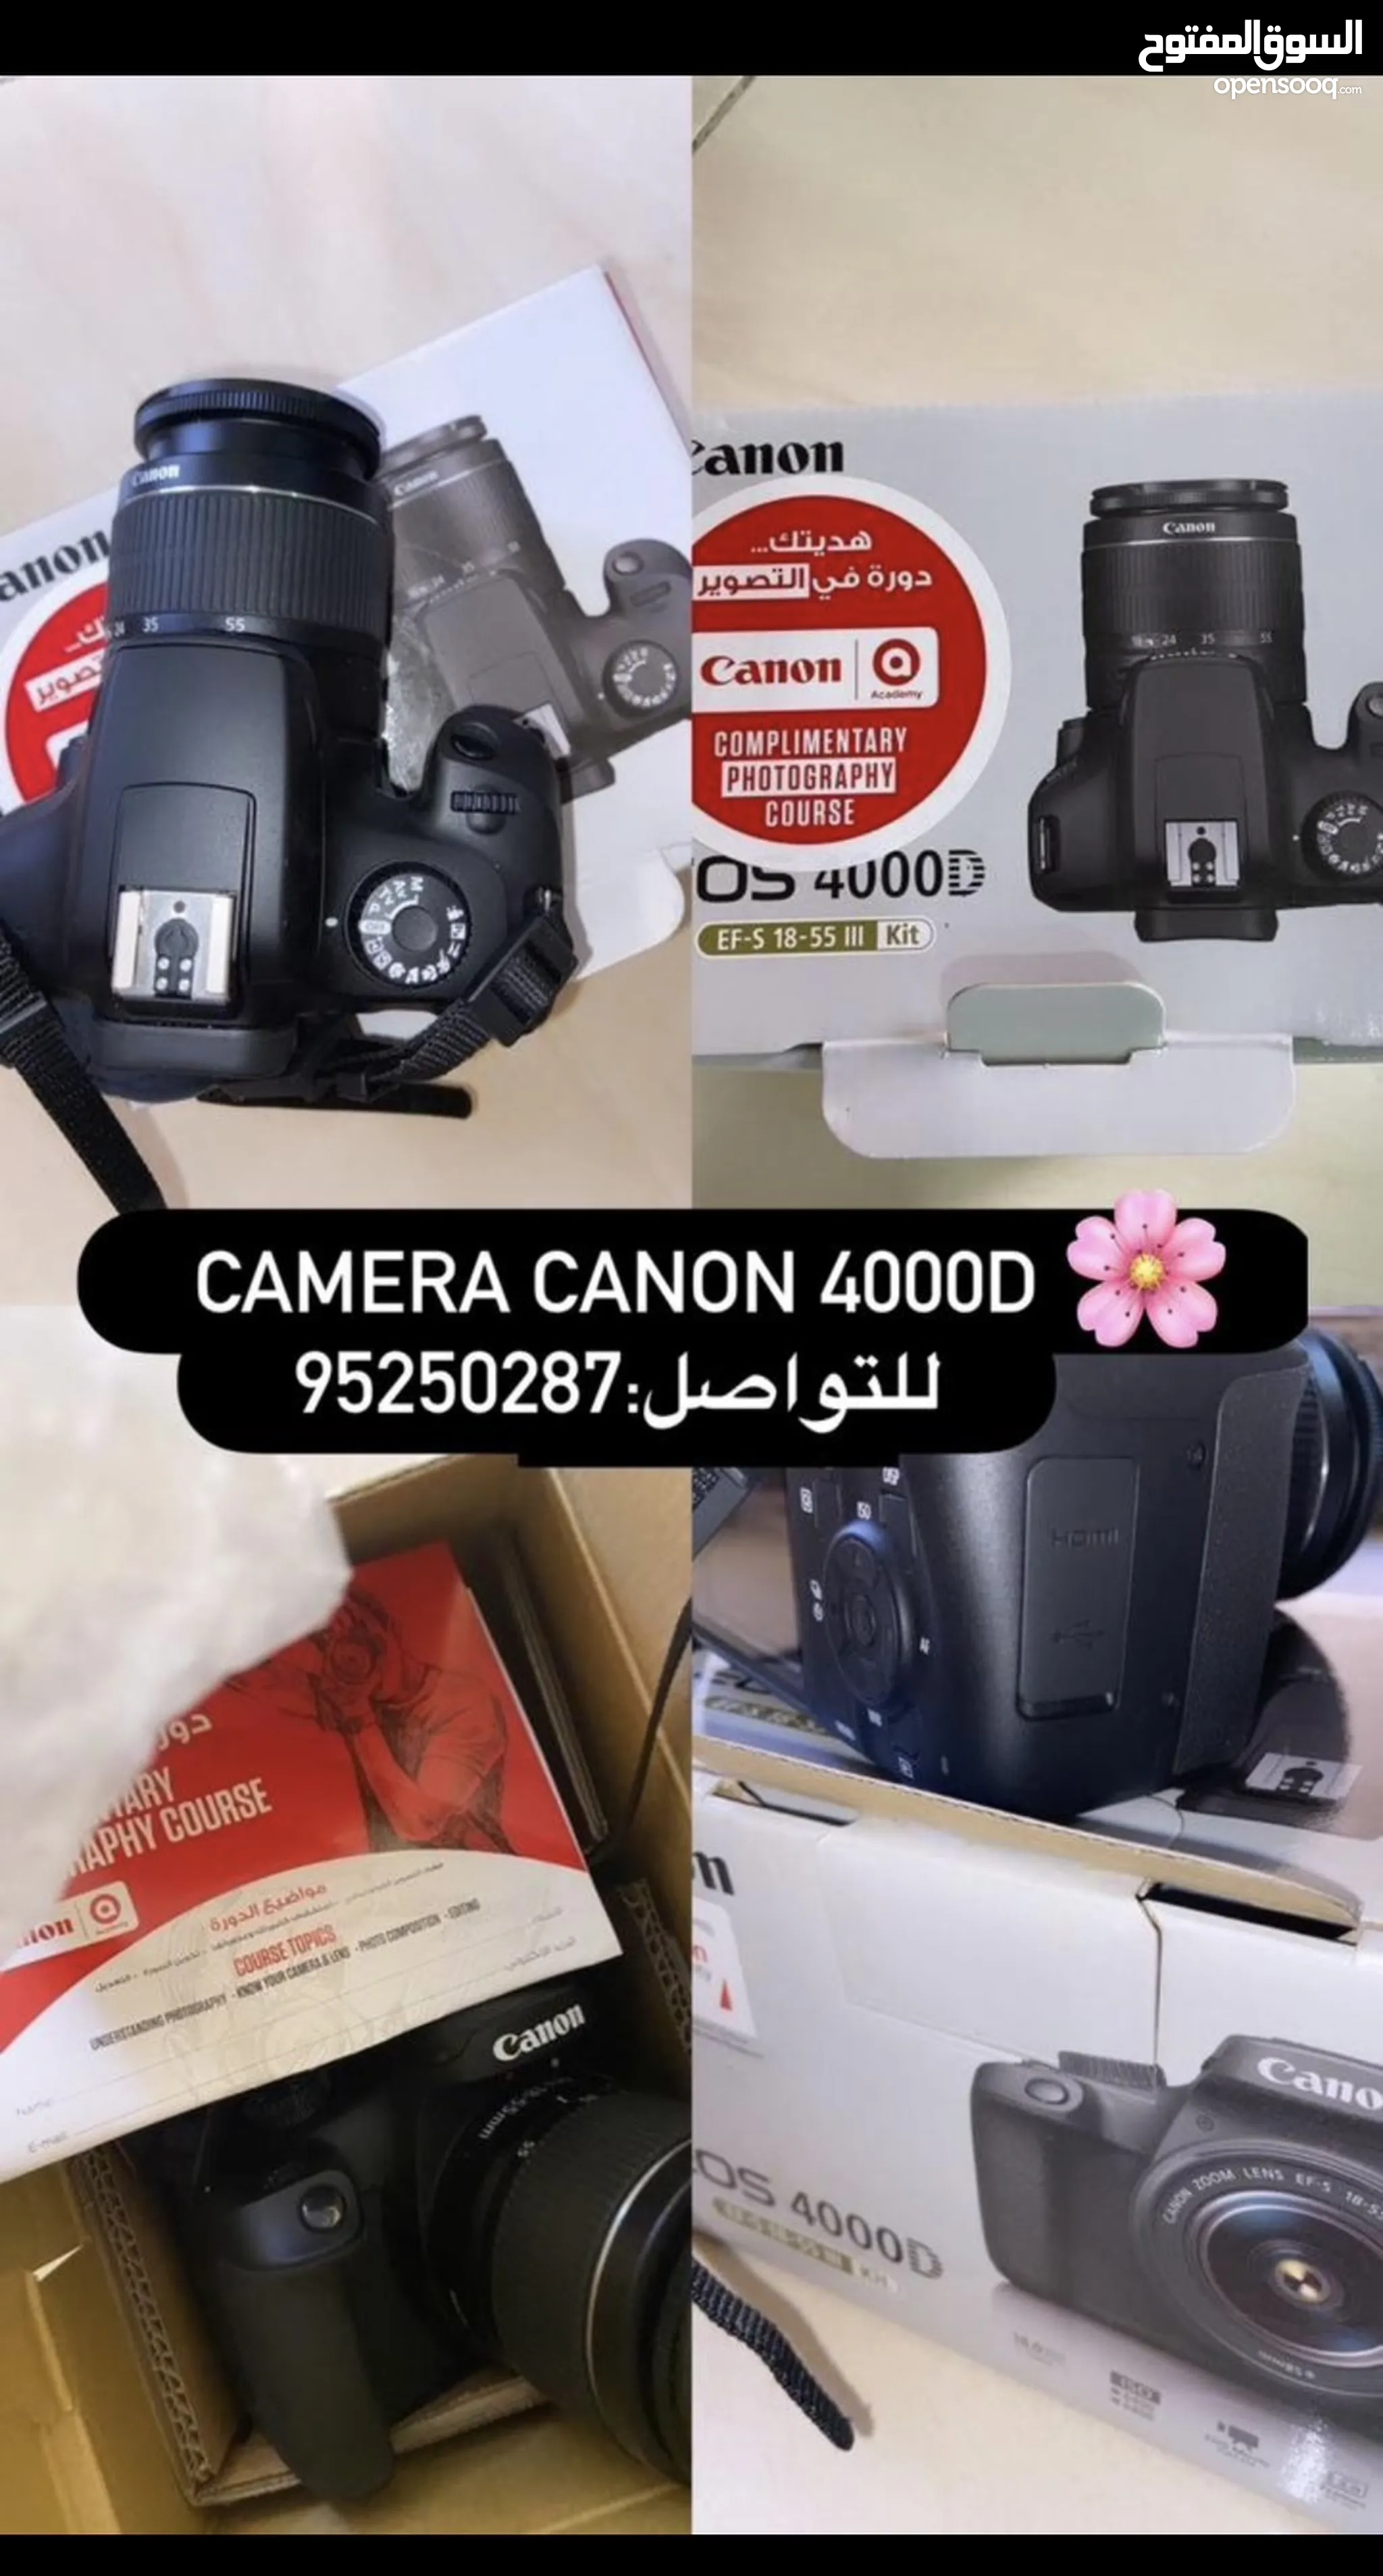 كام كانون للبيع : كاميرا كانون 4000d : 70D : 700D : 600D : 5D : أفضل  الأسعار : الداخلية | السوق المفتوح